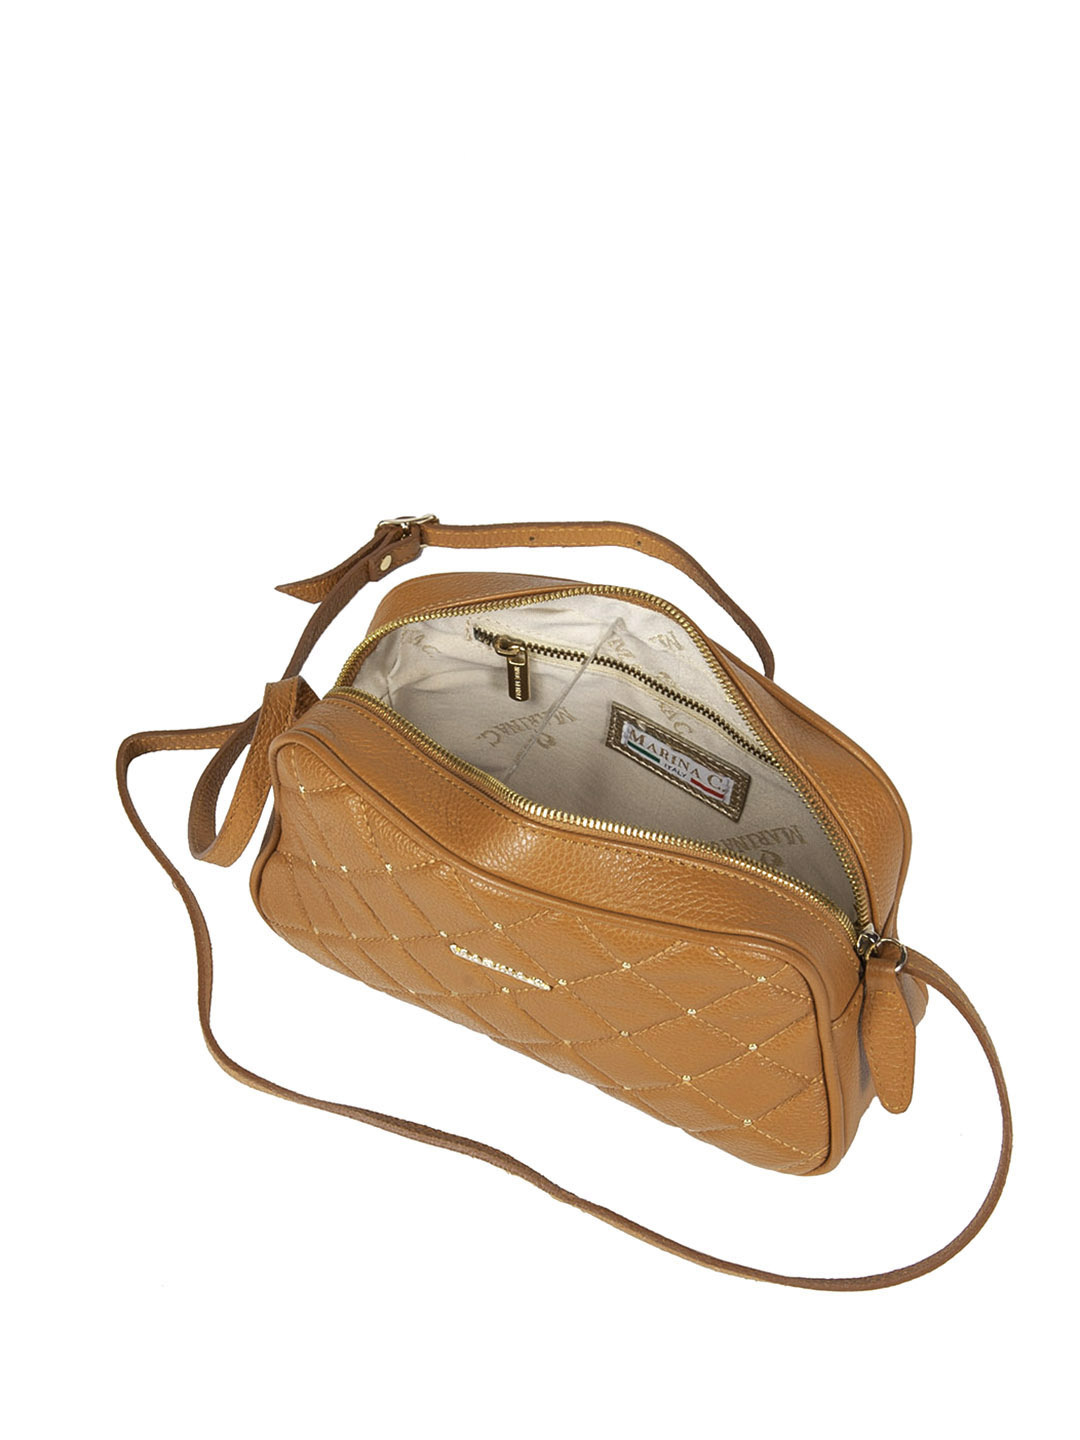 Фото Небольшая сумочка кросс-боди из мягкой стеганой кожи с золотистыми клепками Сумки кросс-боди